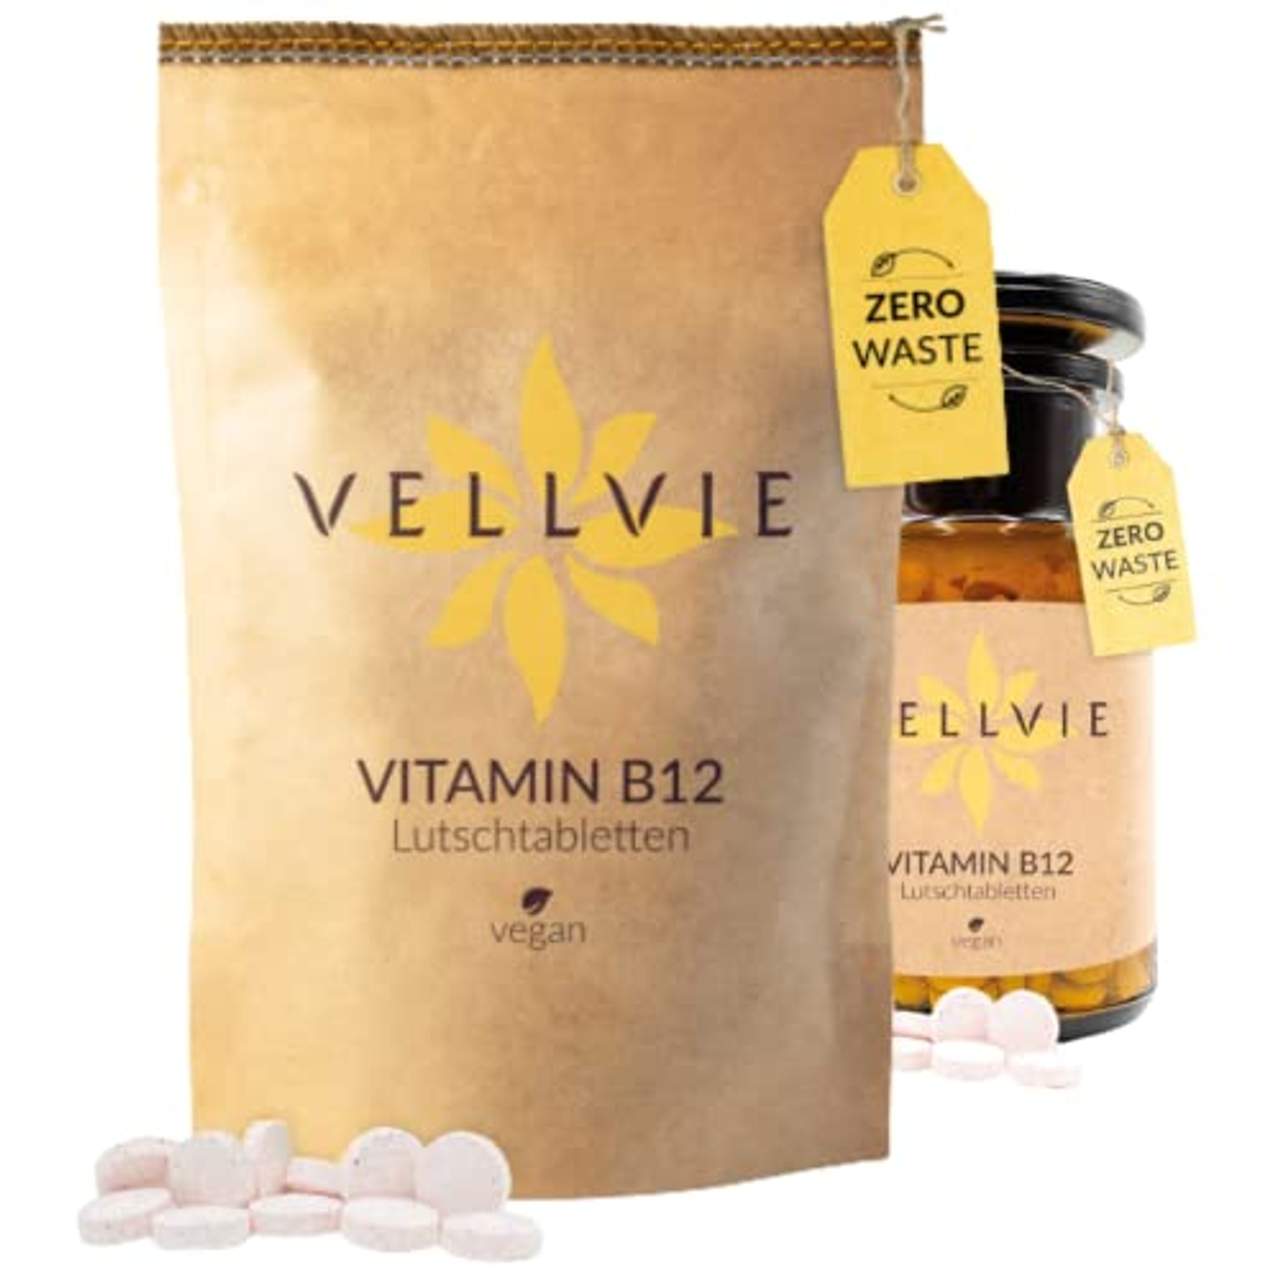 Vitamin B12 Lutschtabletten Zero Waste & Plastikfrei von VELLVIE